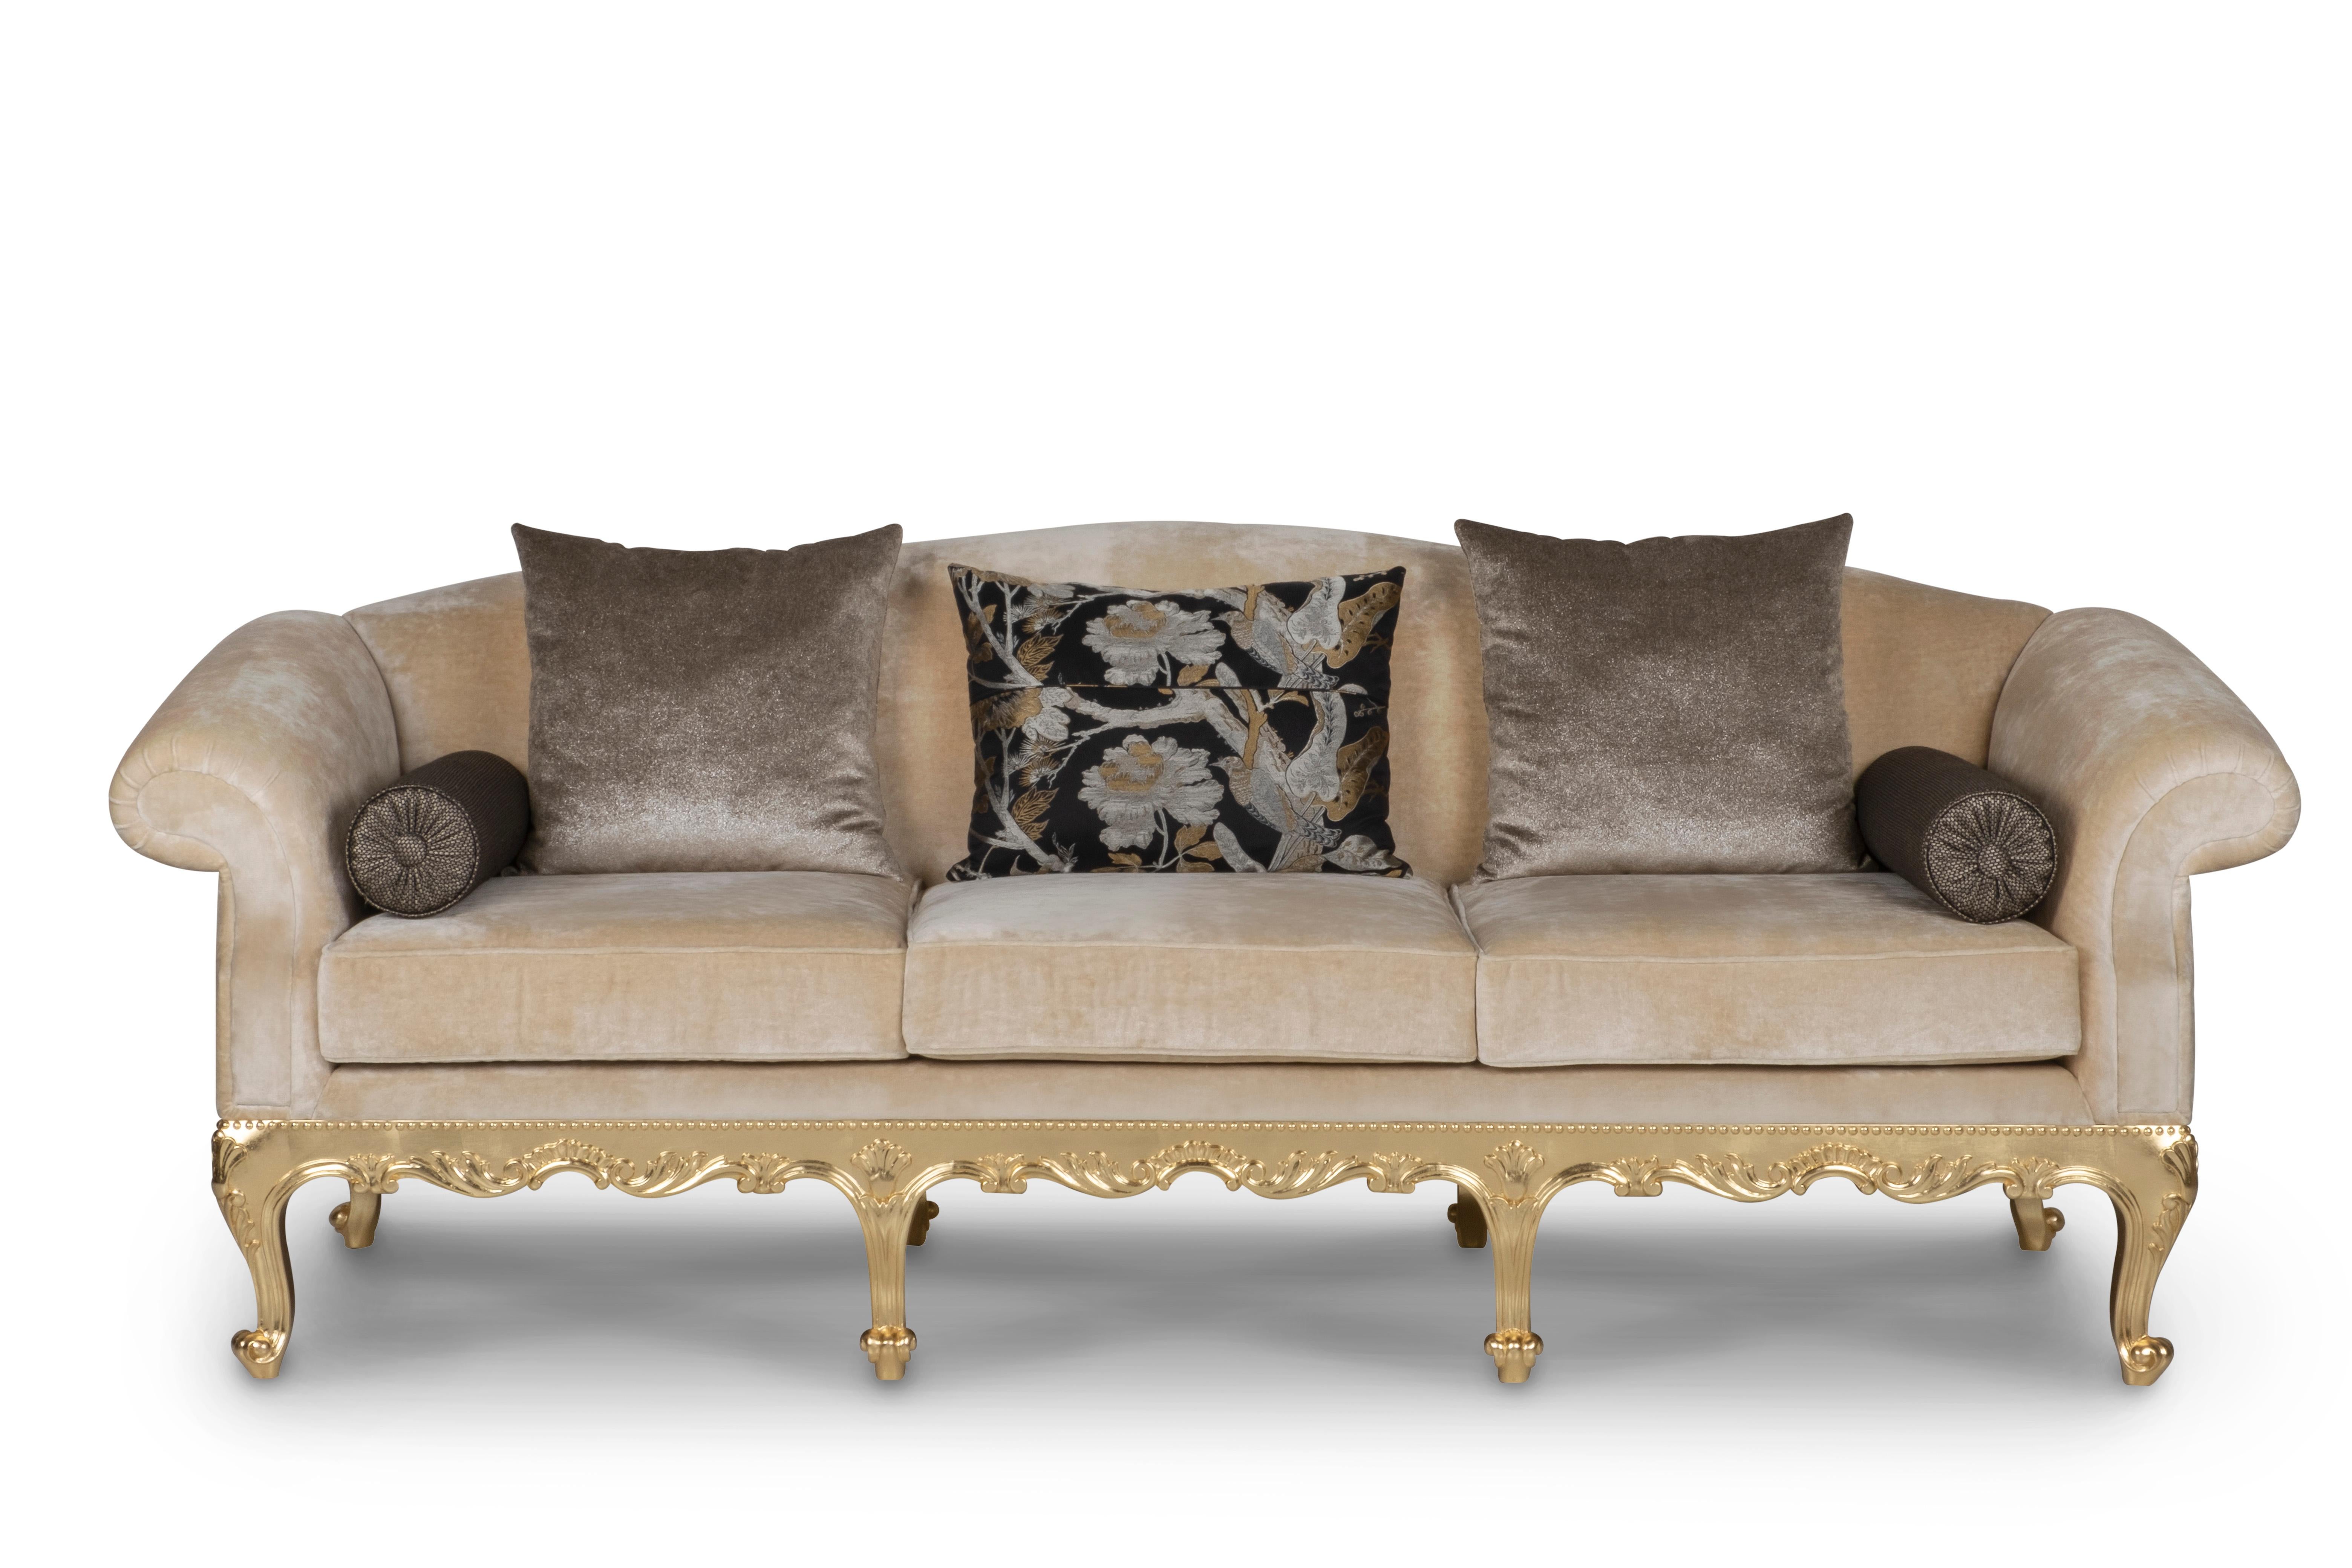 Sofa Dormeuse, Neoclassical Collection, handgefertigt in Portugal - Europa von GF Modern.

Das Sofa Dormeuse verleiht jedem Wohnbereich einen raffinierten und raffinierten Touch. Das Sofa ist mit bronzefarbenem und beigem Samt gepolstert und mit